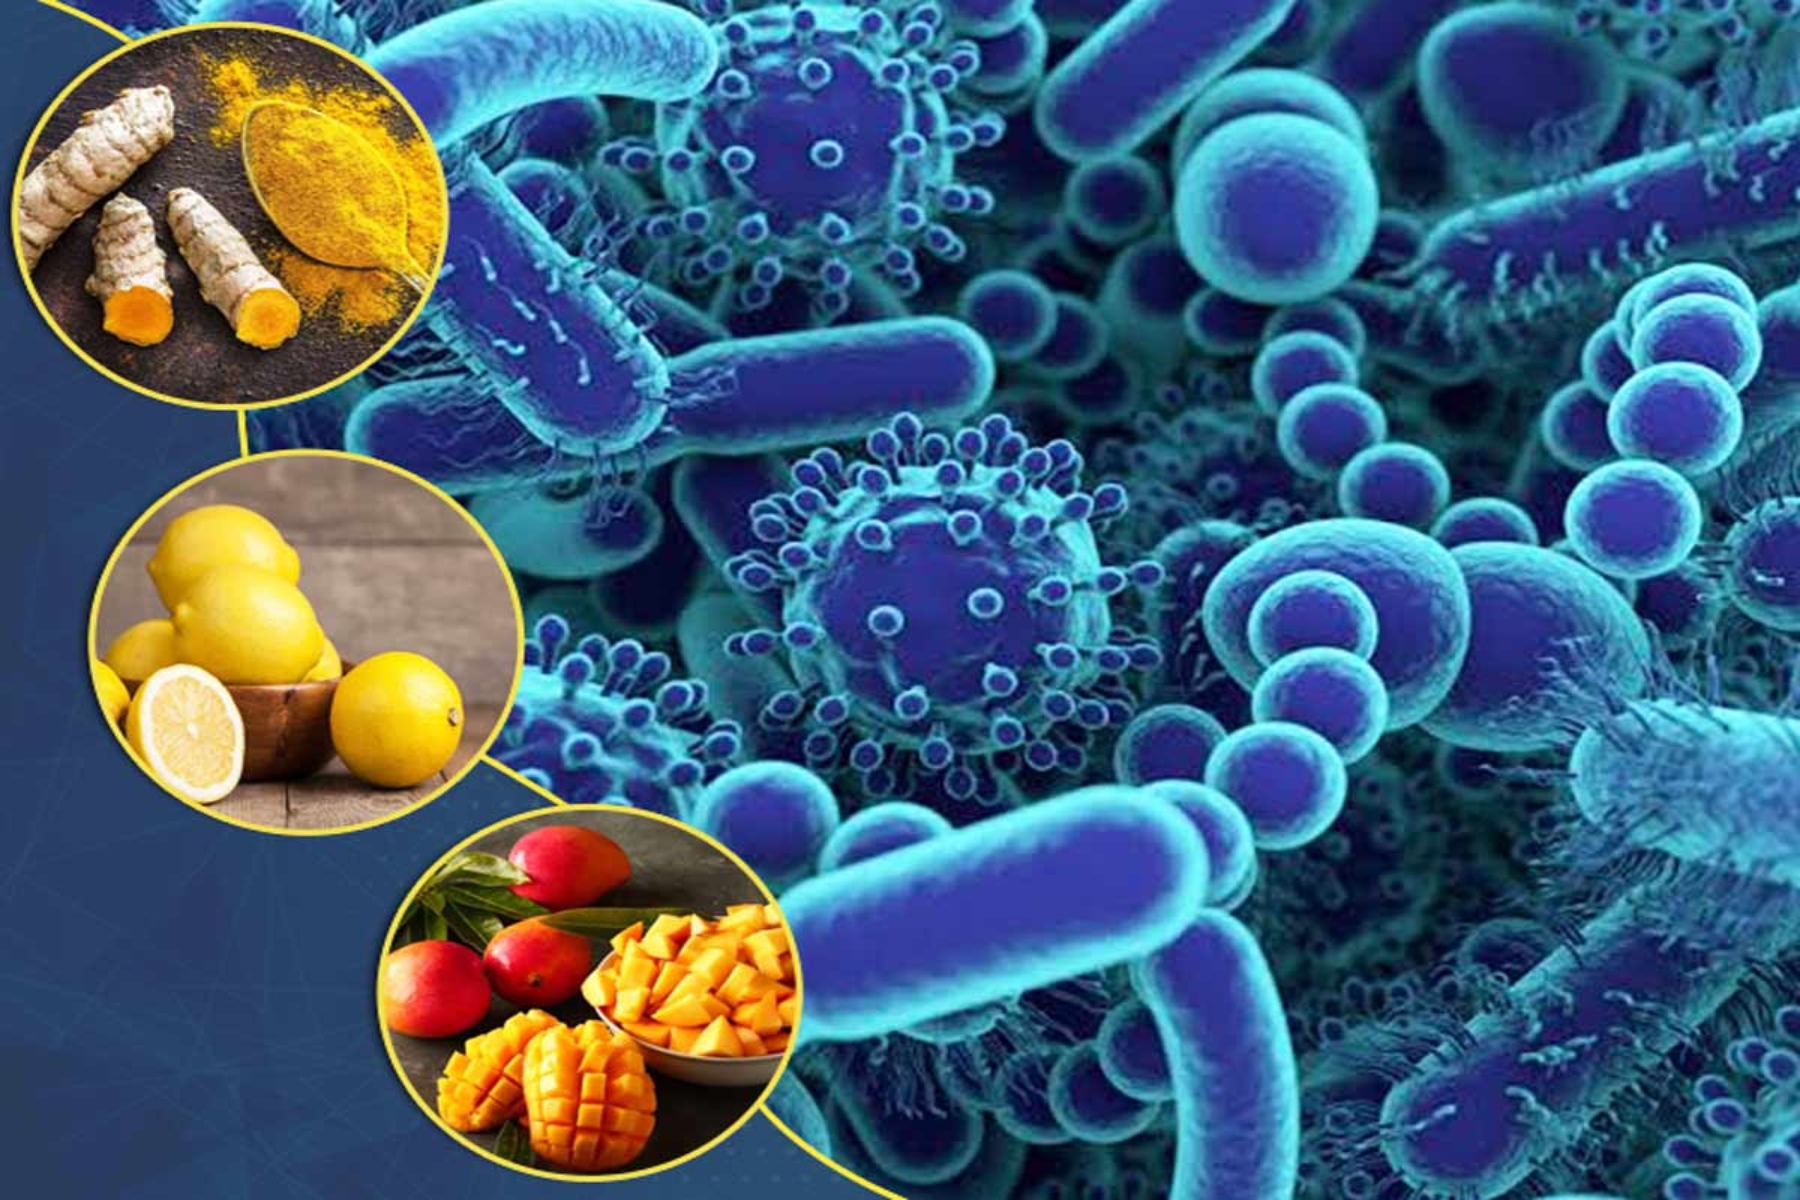 Τρόφιμα βακτήρια: Βακτηριακοί κίνδυνοι στα καθημερινά τρόφιμα